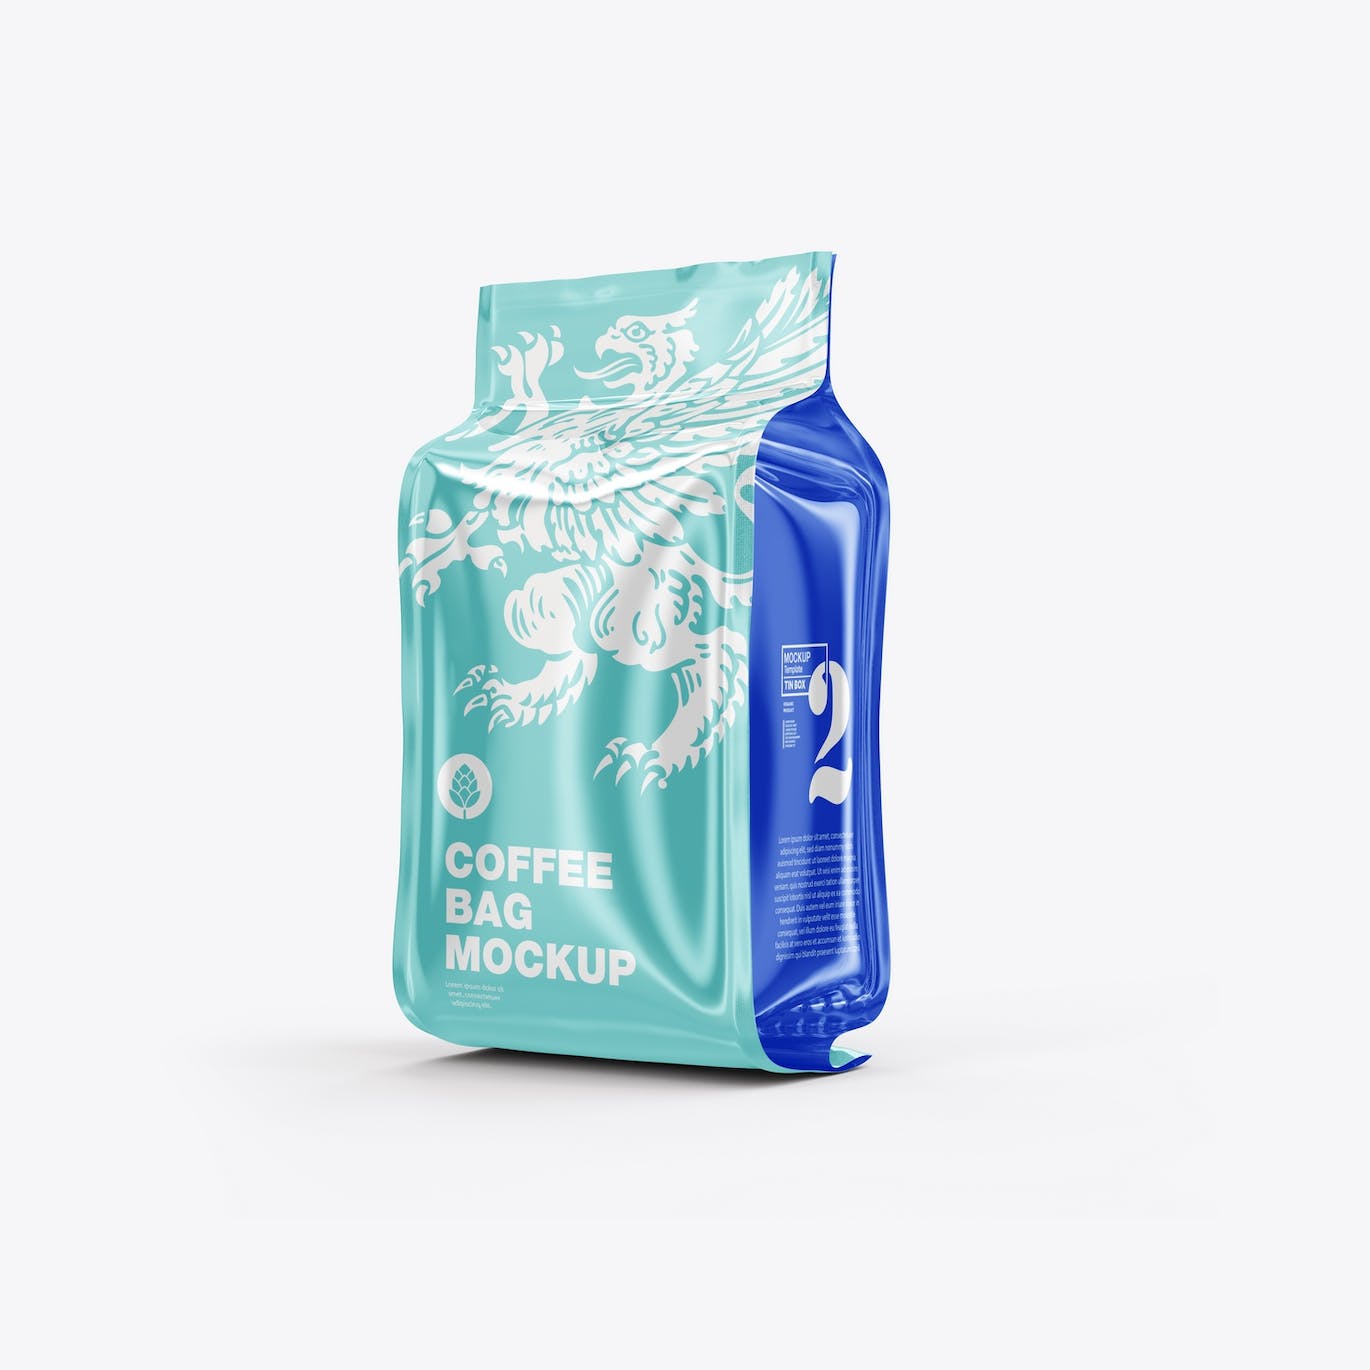 光滑的塑料纸咖啡袋包装设计样机图 Set Glossy Plastic Paper Coffee Bag Mockup 样机素材 第9张